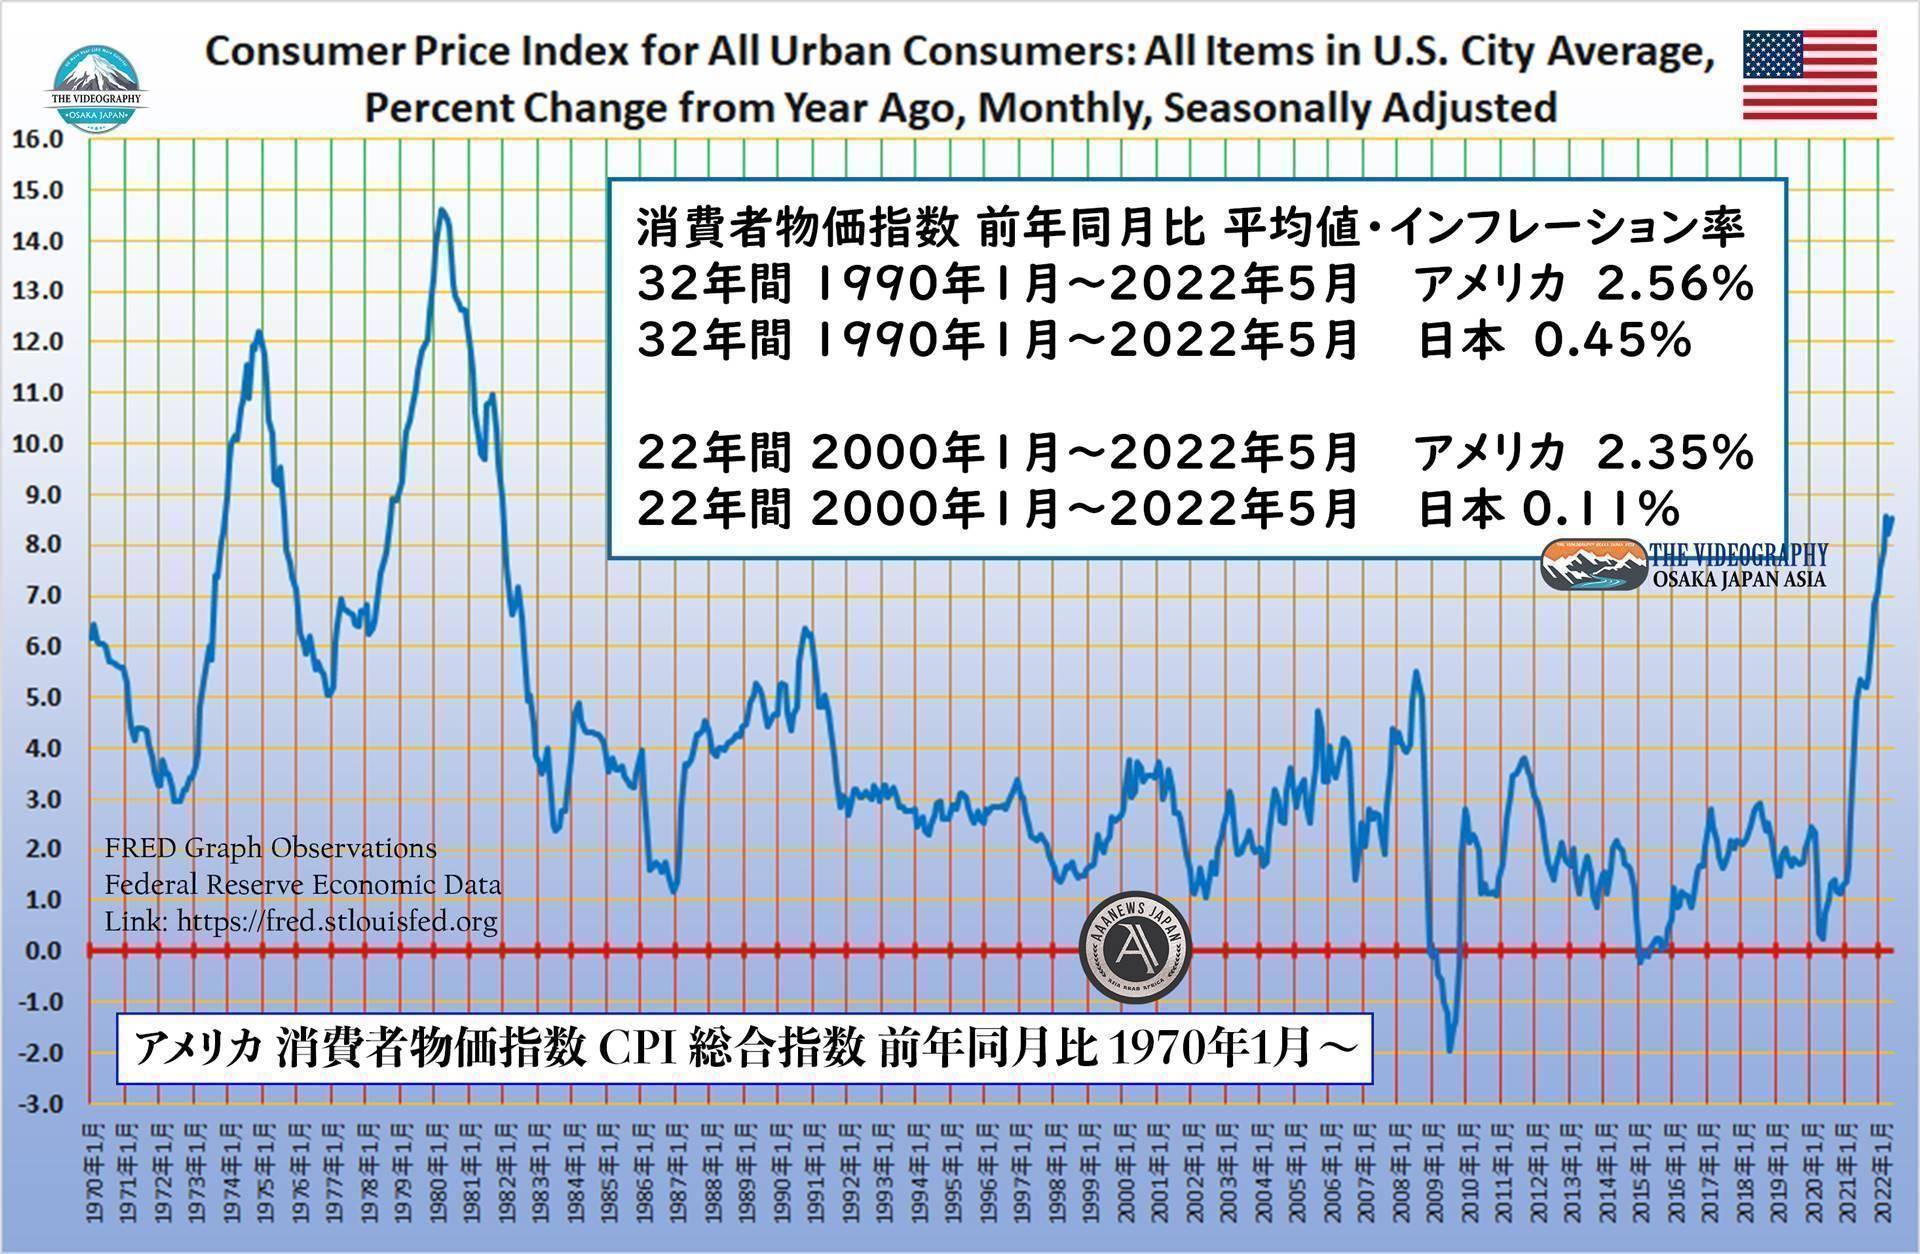 アメリカ 消費者物価指数 CPI 総合指数 前年同月比 1970年1月～。 Consumer Price Index for All Urban Consumers: All Items in U.S. City Average, Percent Change from Year Ago, Monthly, Seasonally Adjusted. 